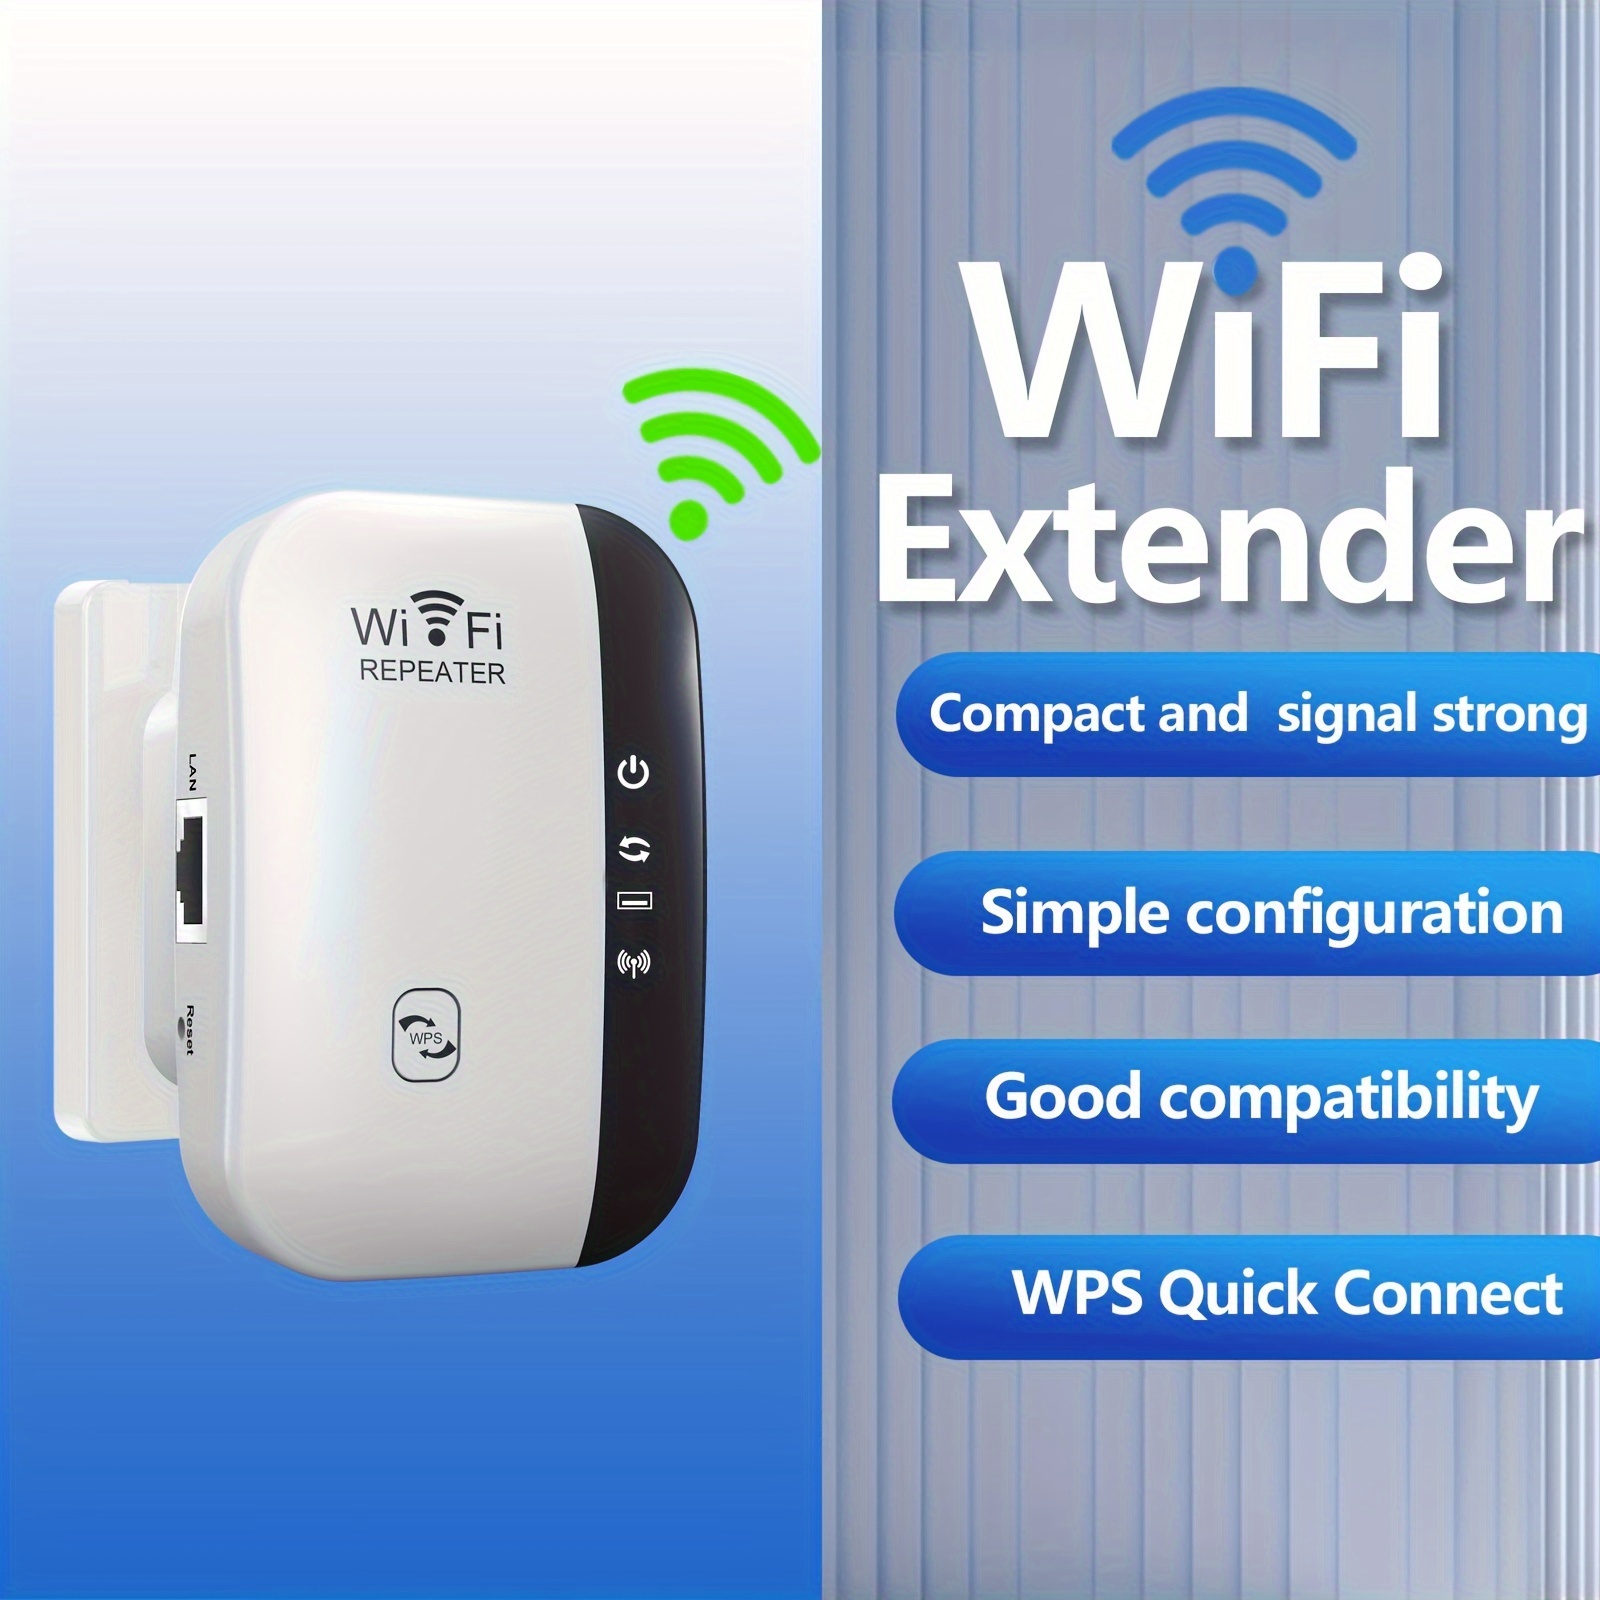 Extensor WiFi, amplificador WiFi, repetidor WiFi, cubre hasta 2640 pies  cuadrados y 40 dispositivos, amplificador de Internet, con puerto Ethernet